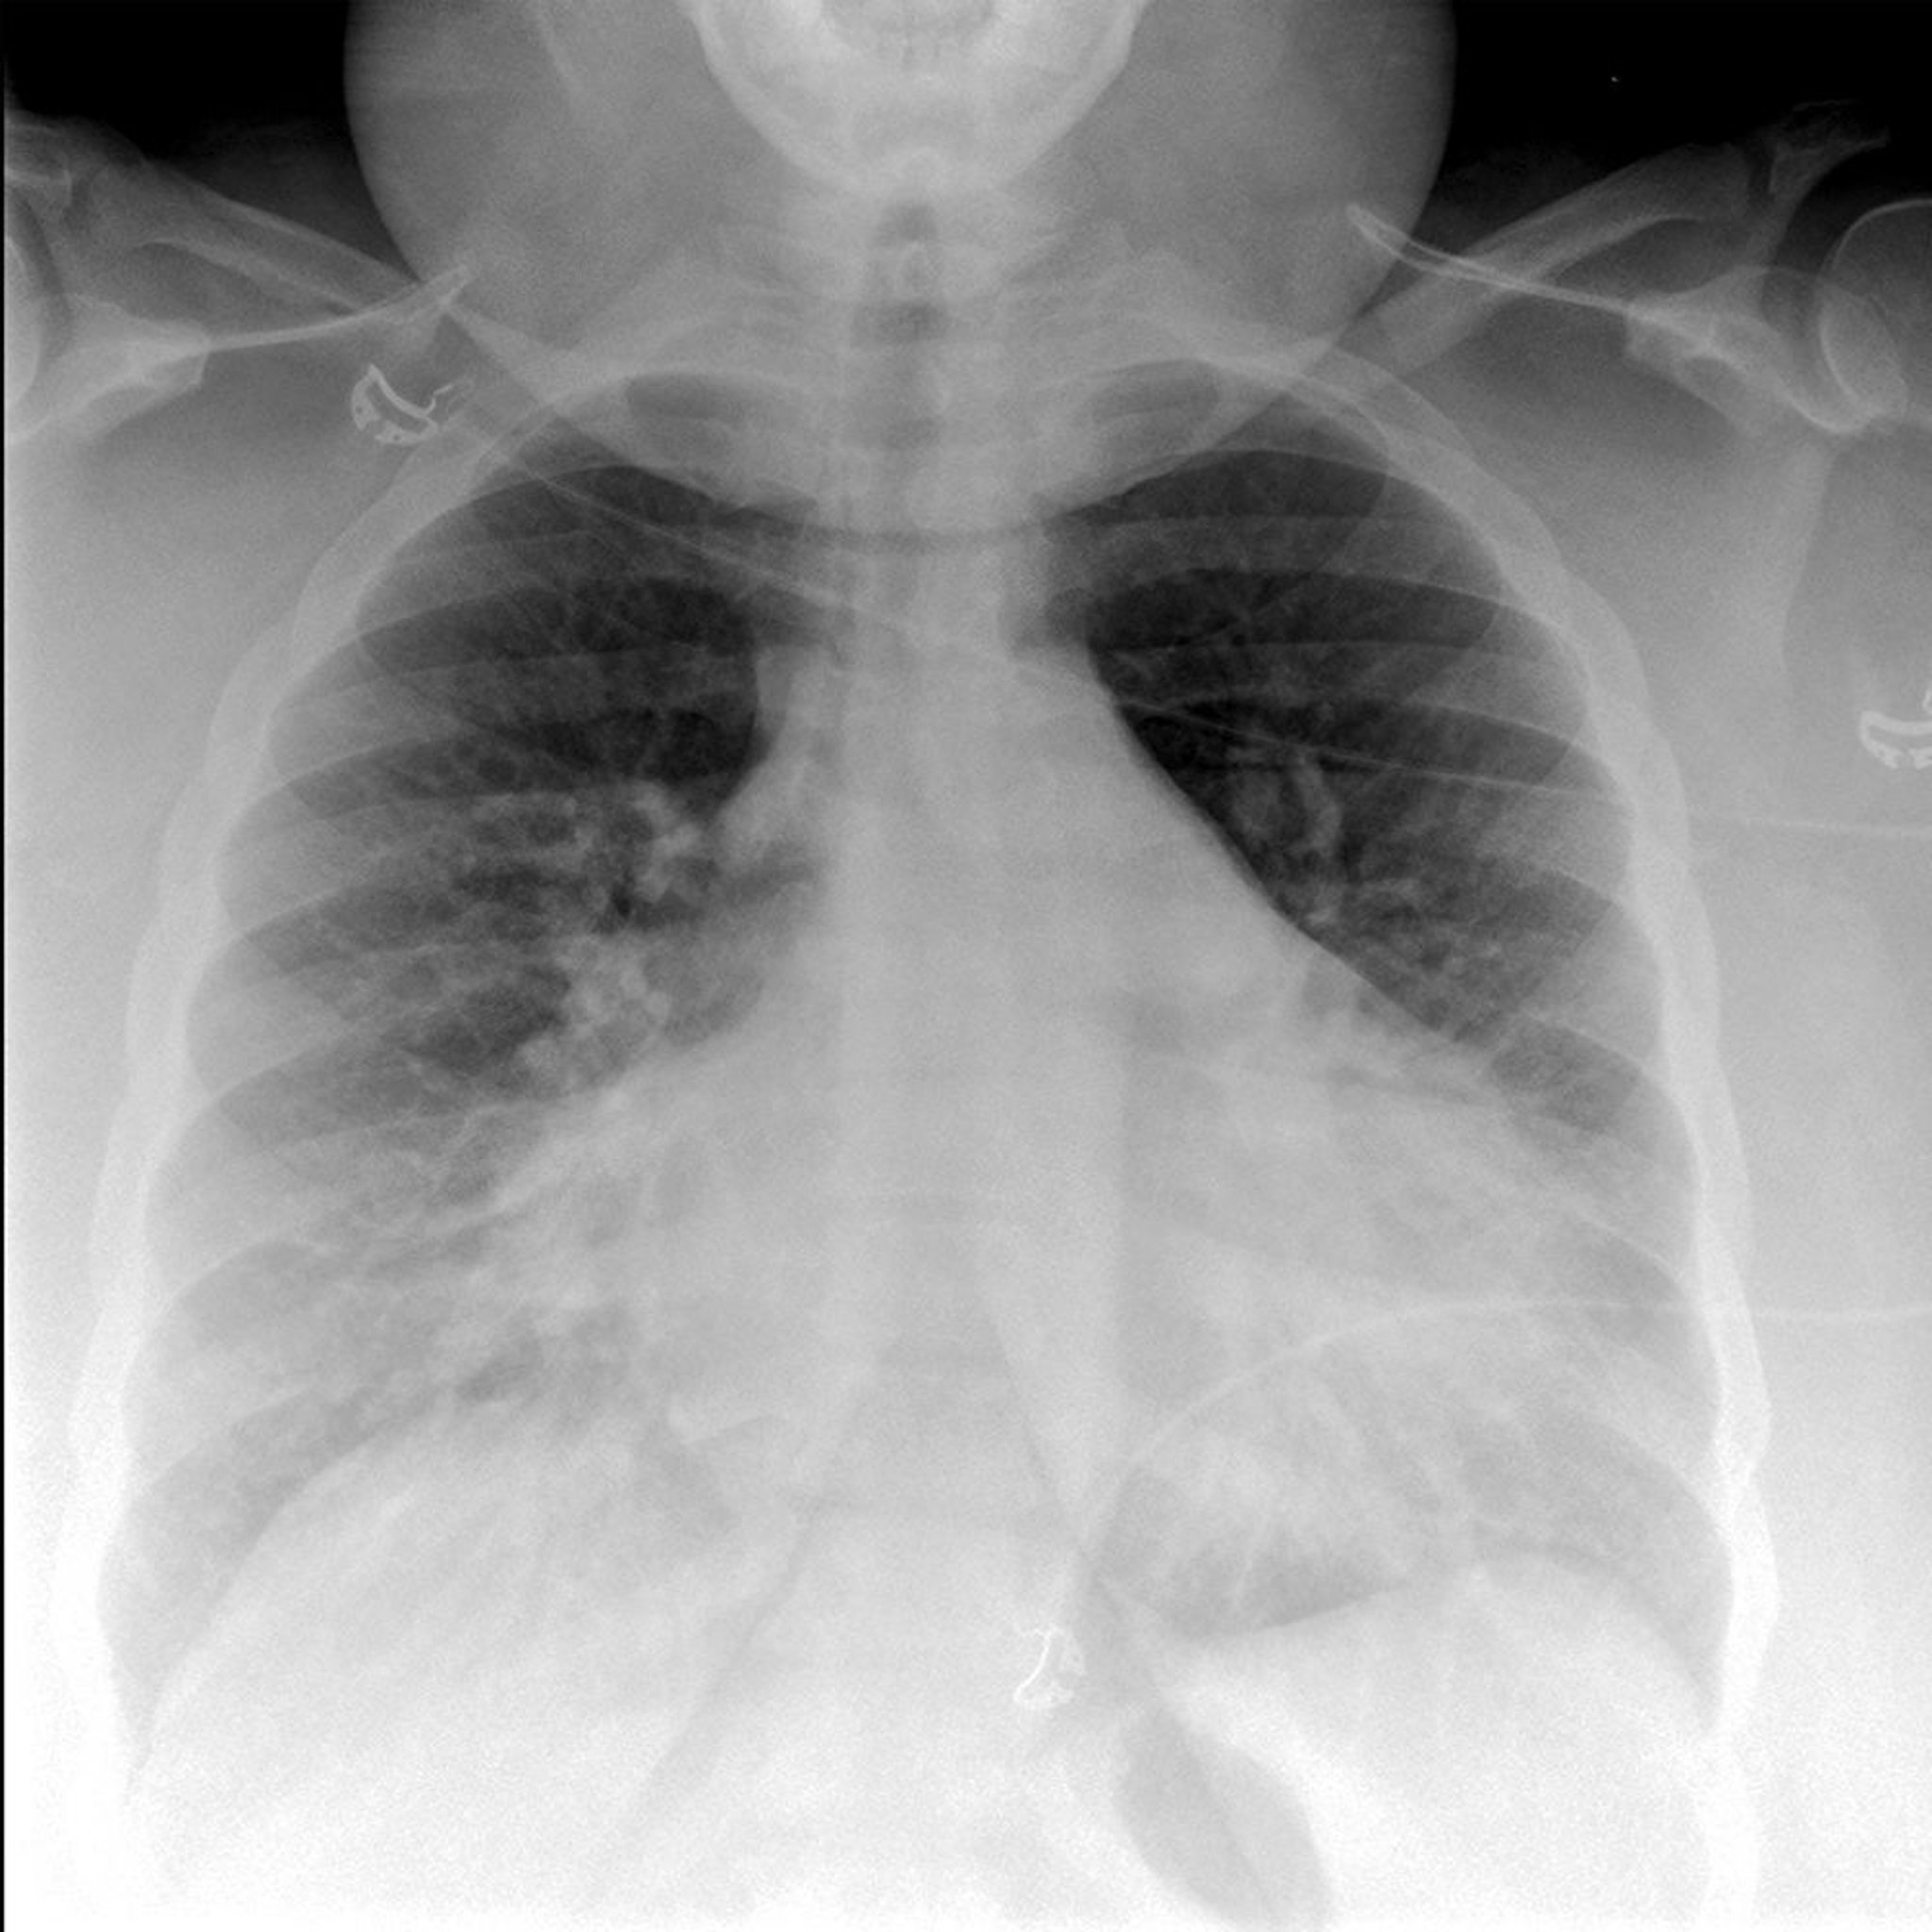 Phim chụp X-quang ngực của bệnh nhân bị phù phổi